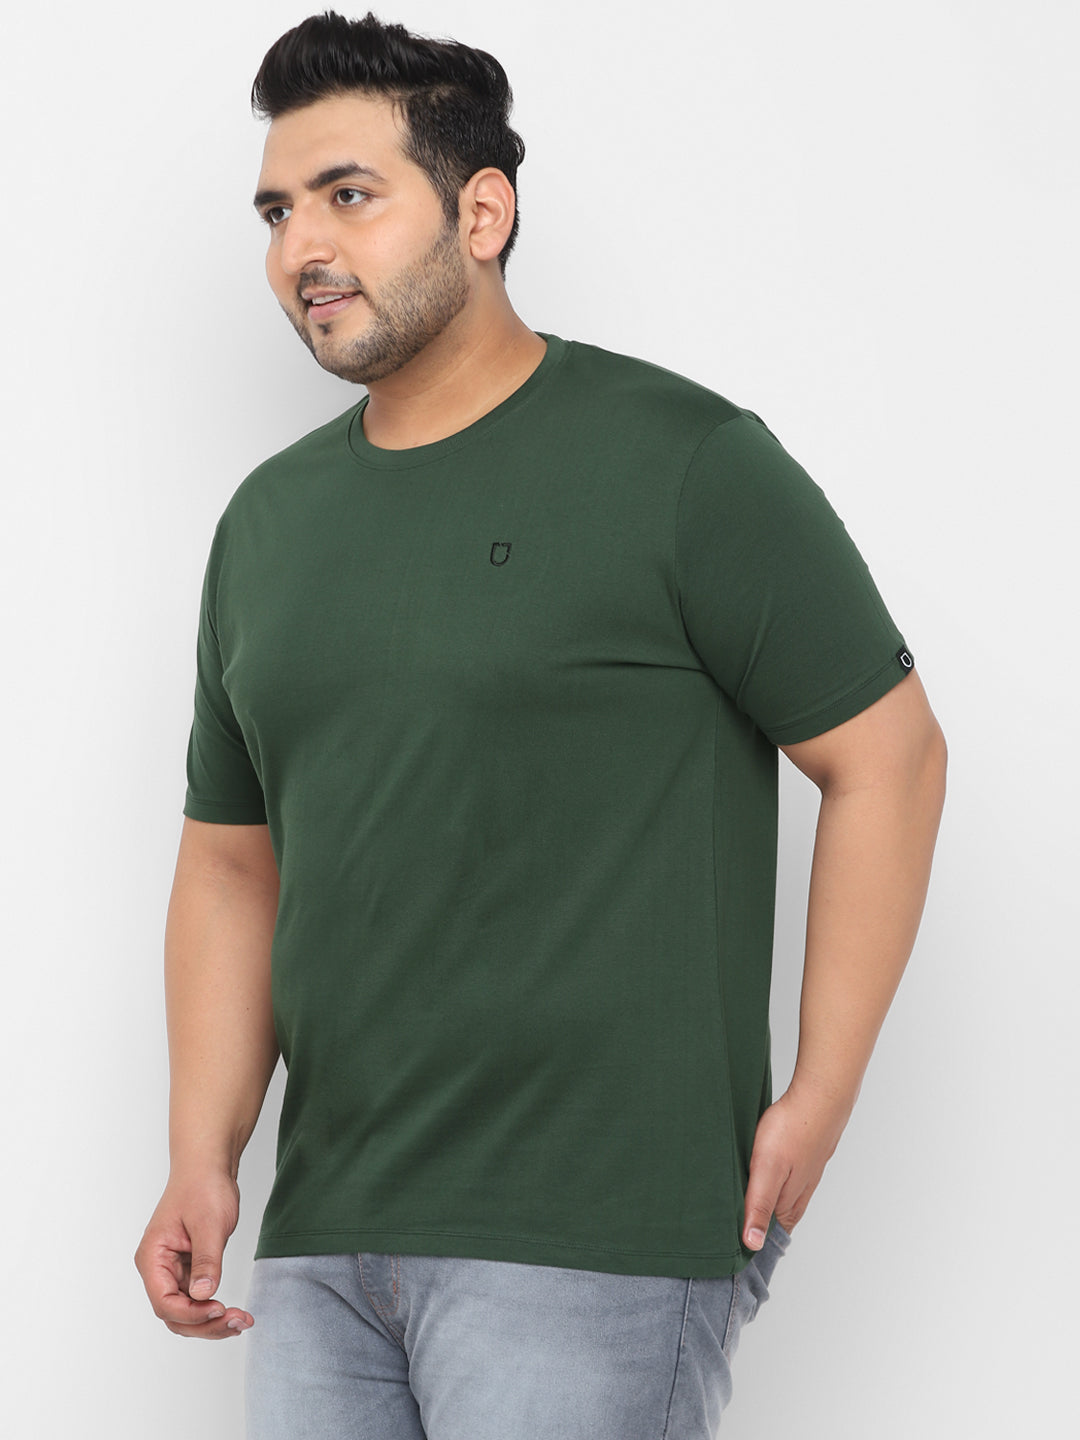 Plus Men's Dark Green Solid Regular Fit Round Neck Cotton T-Shirt ...